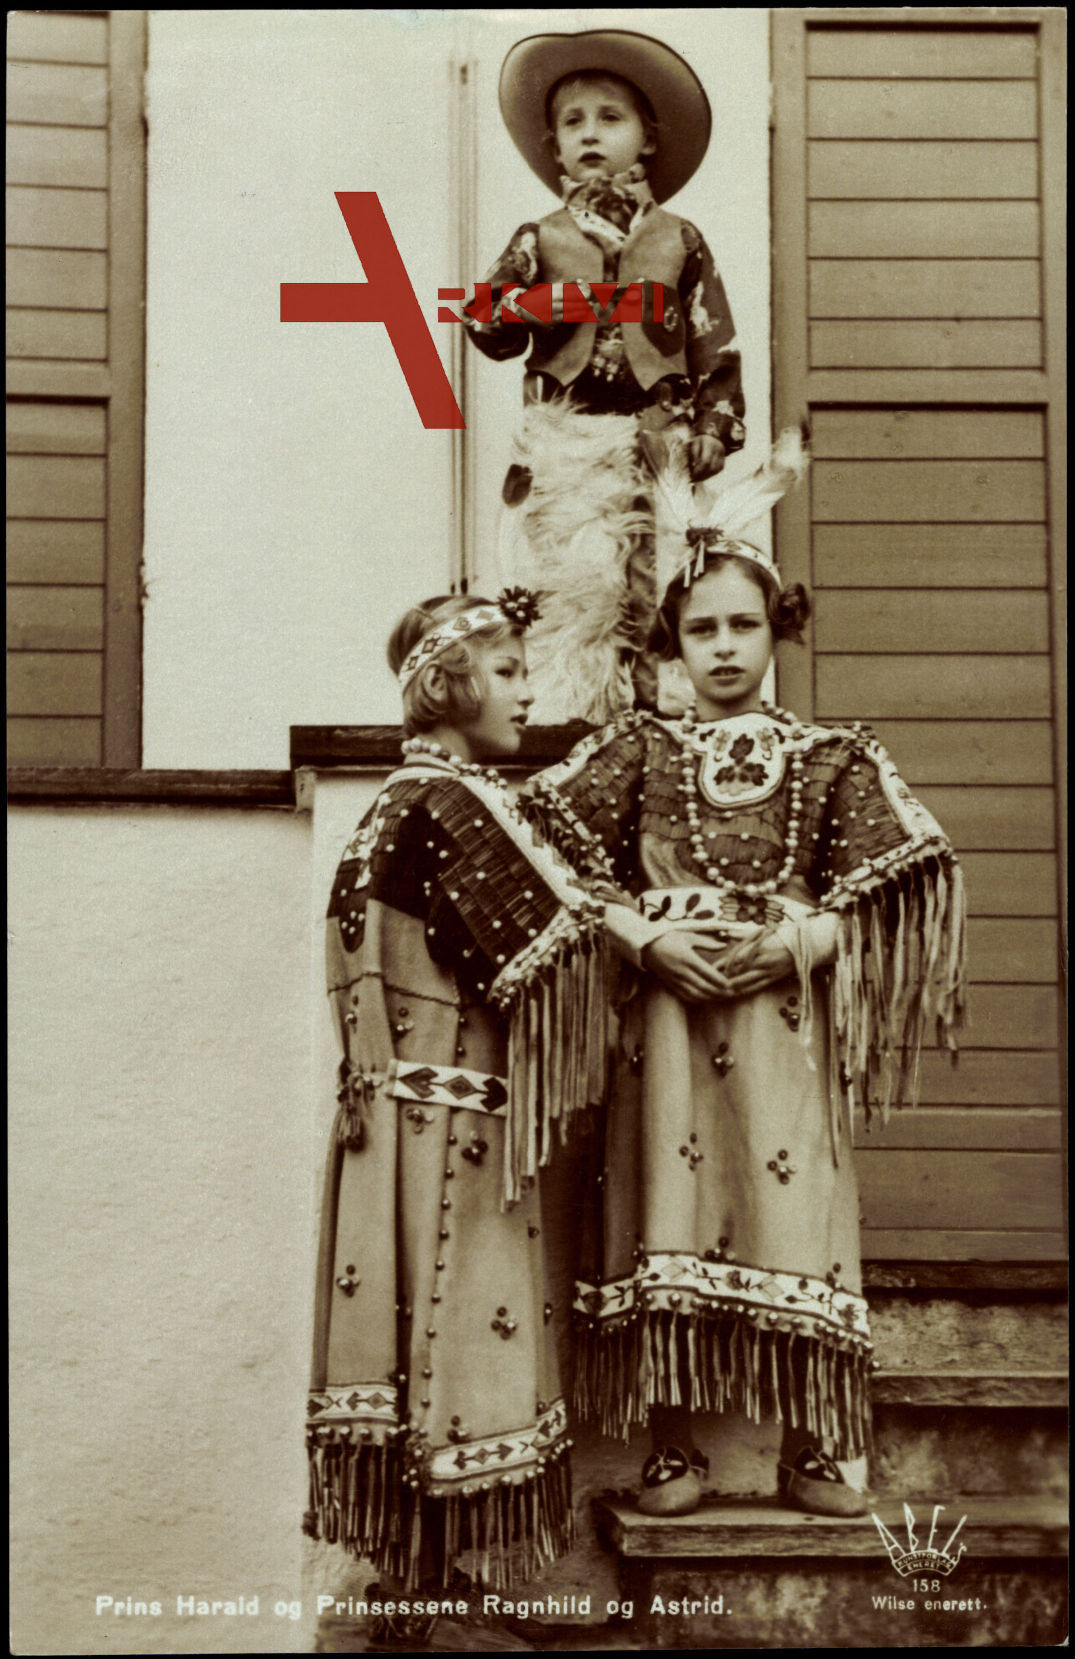 Prins Harald og Prinsessene Ragnhild og Astrid, Cowboy und Indianer Kostüme